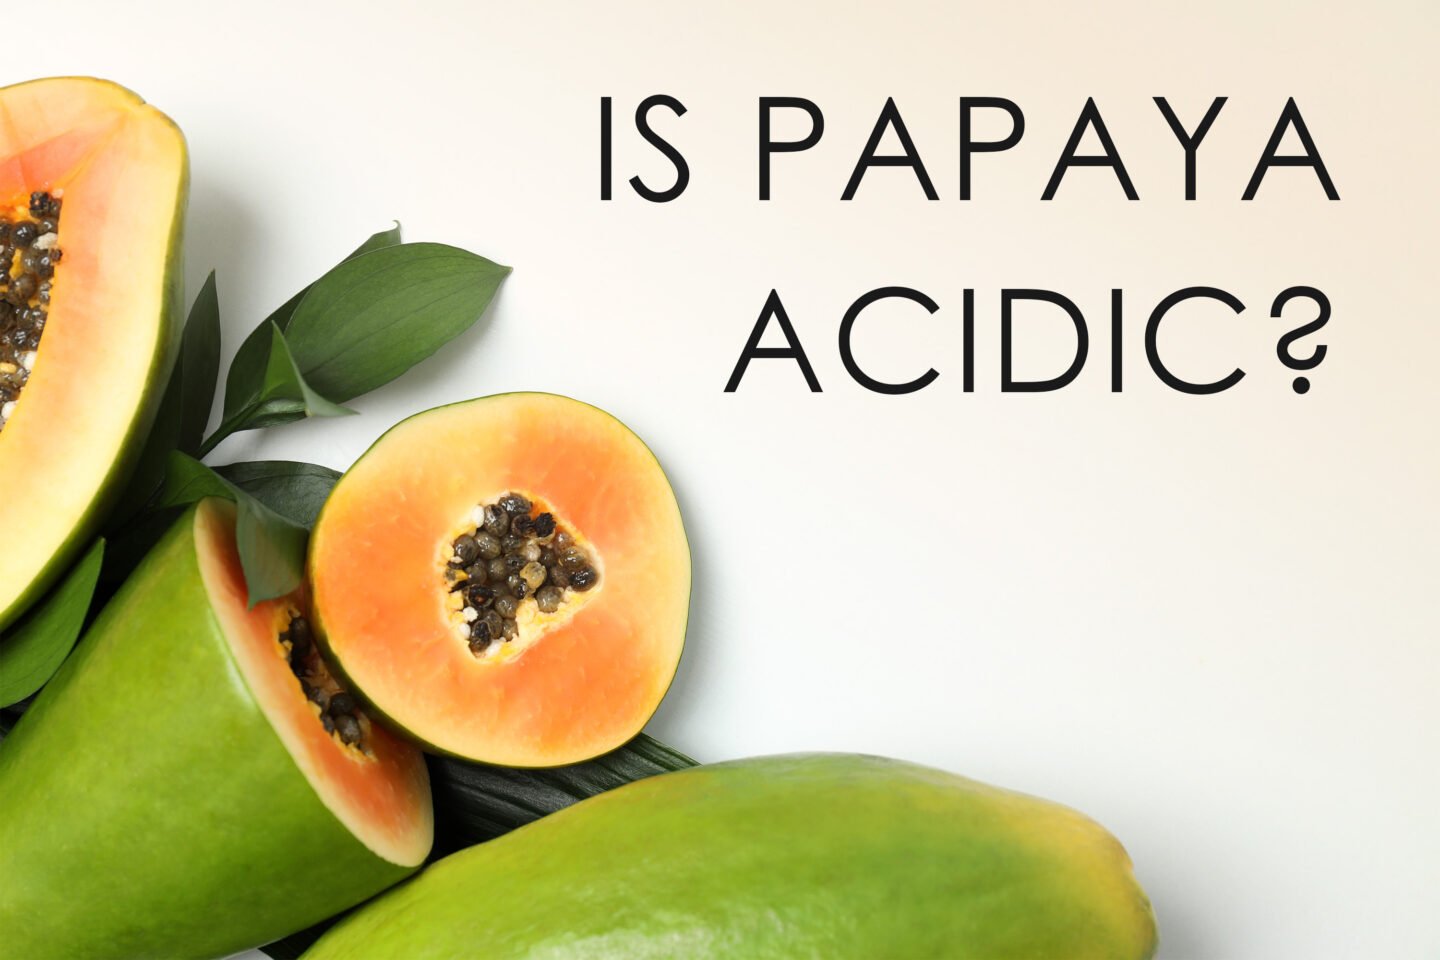 is papaya acidic or alkaline